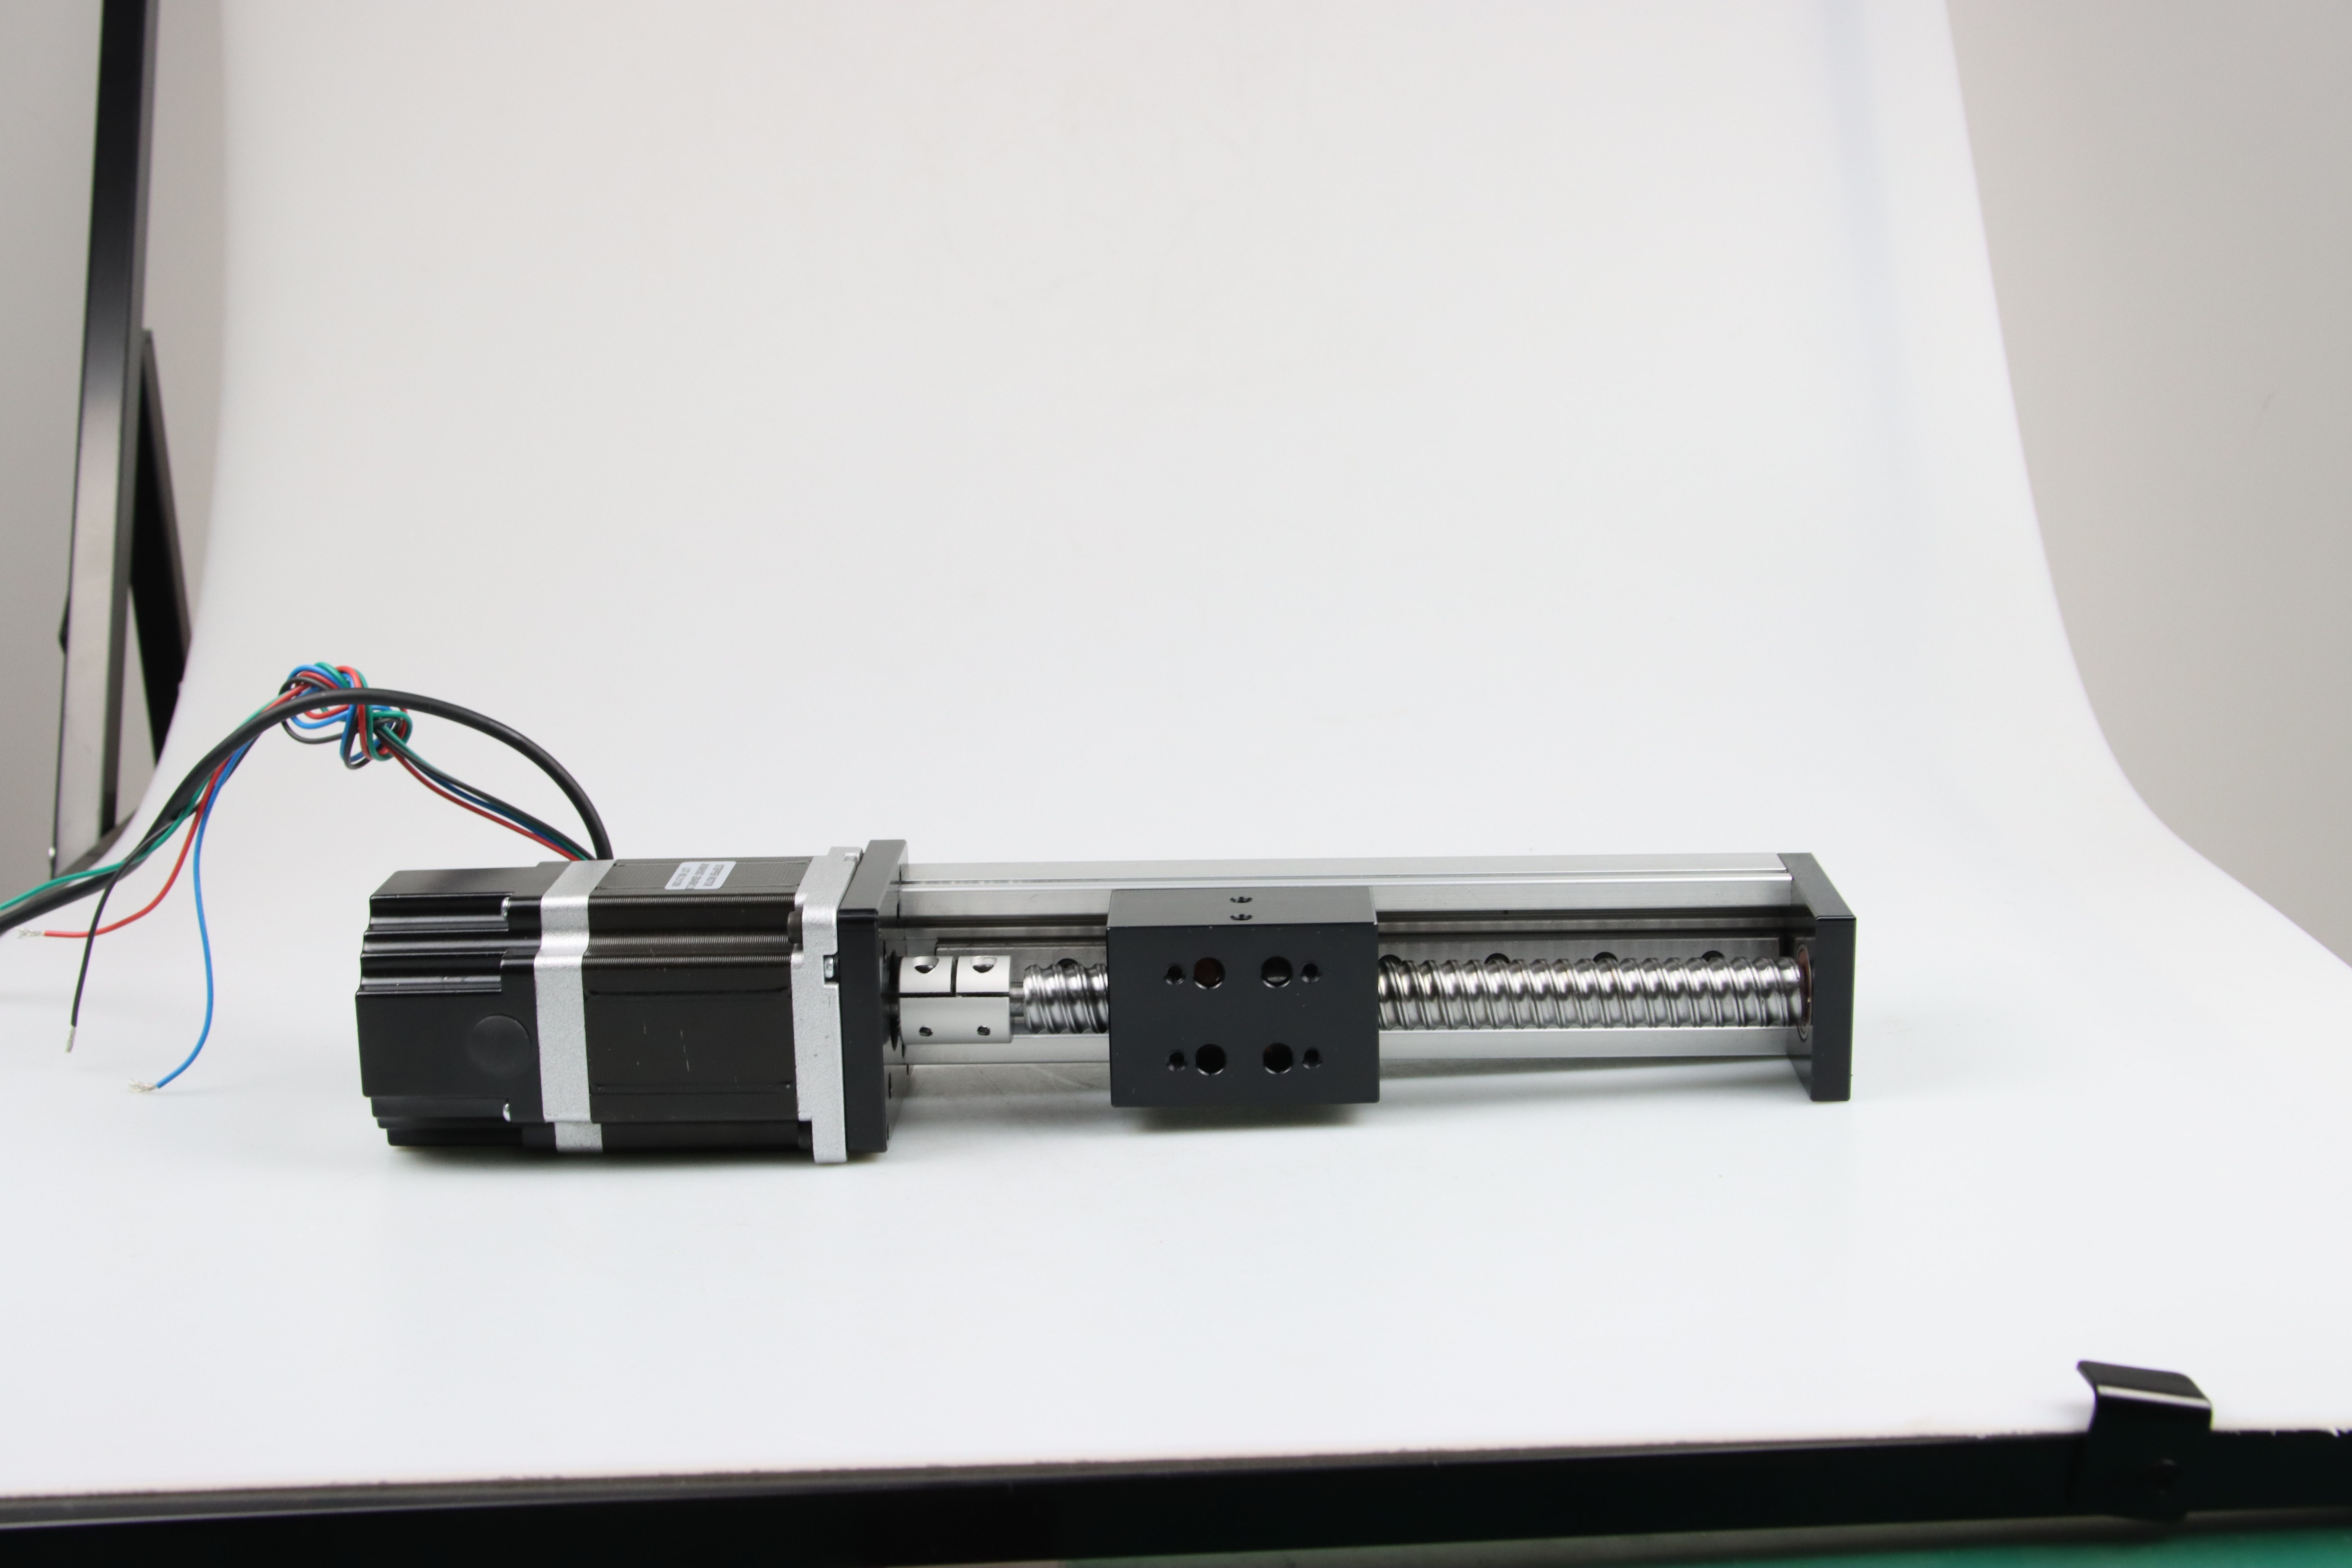 200mm de Modulecnc van de Diagids Lijst6v Stepper Motor Nema 24 voor 3D Druk